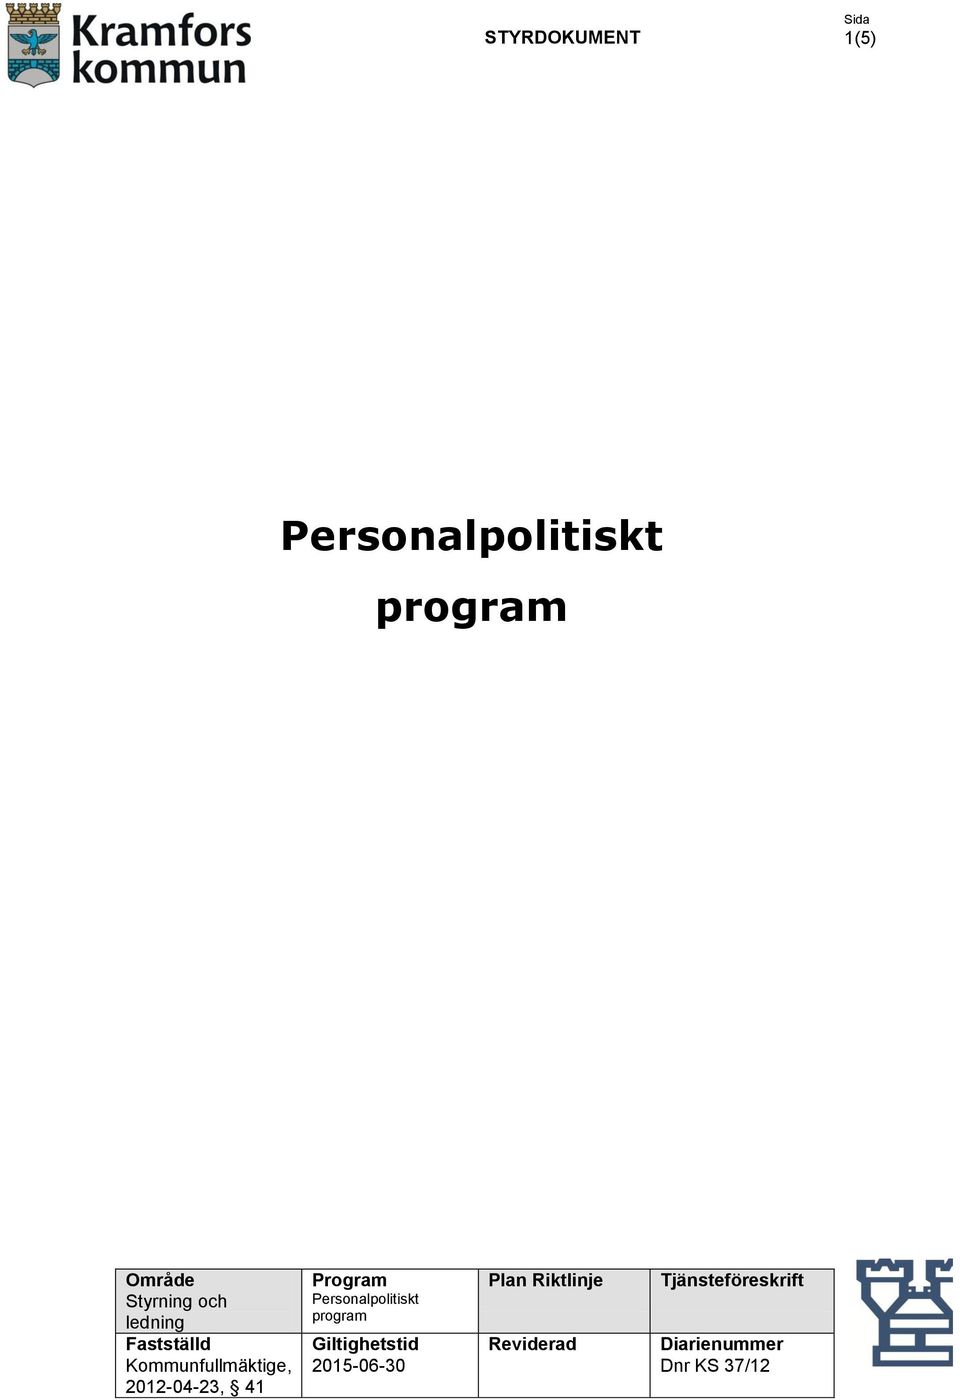 41 Program Personalpolitiskt program Giltighetstid 2015-06-30